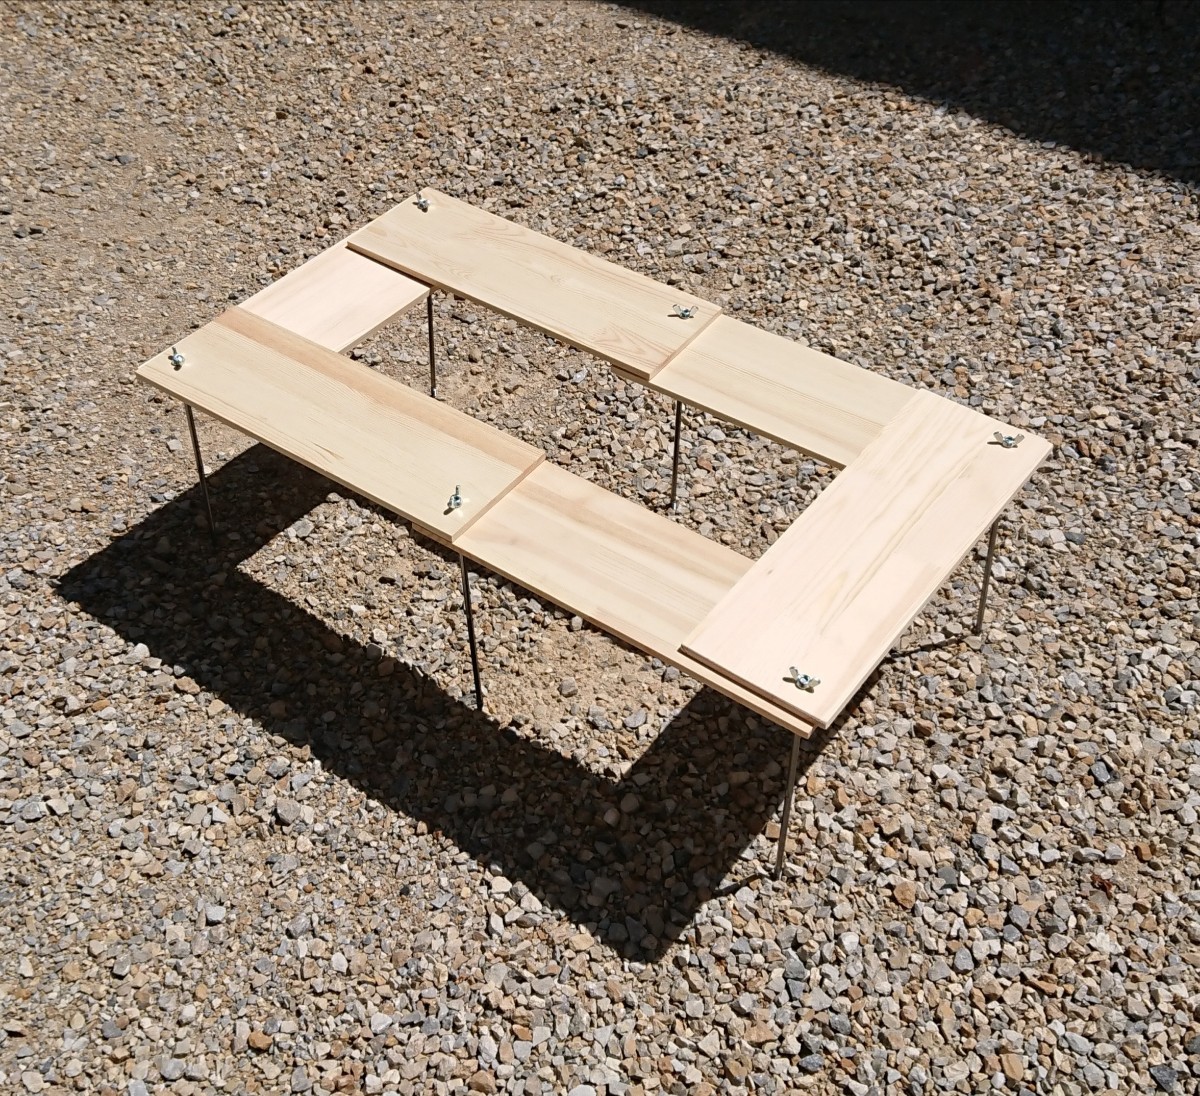 BBQ 焚き火テーブル 76×76cm 【組立簡単、軽量、収納コンパクト】